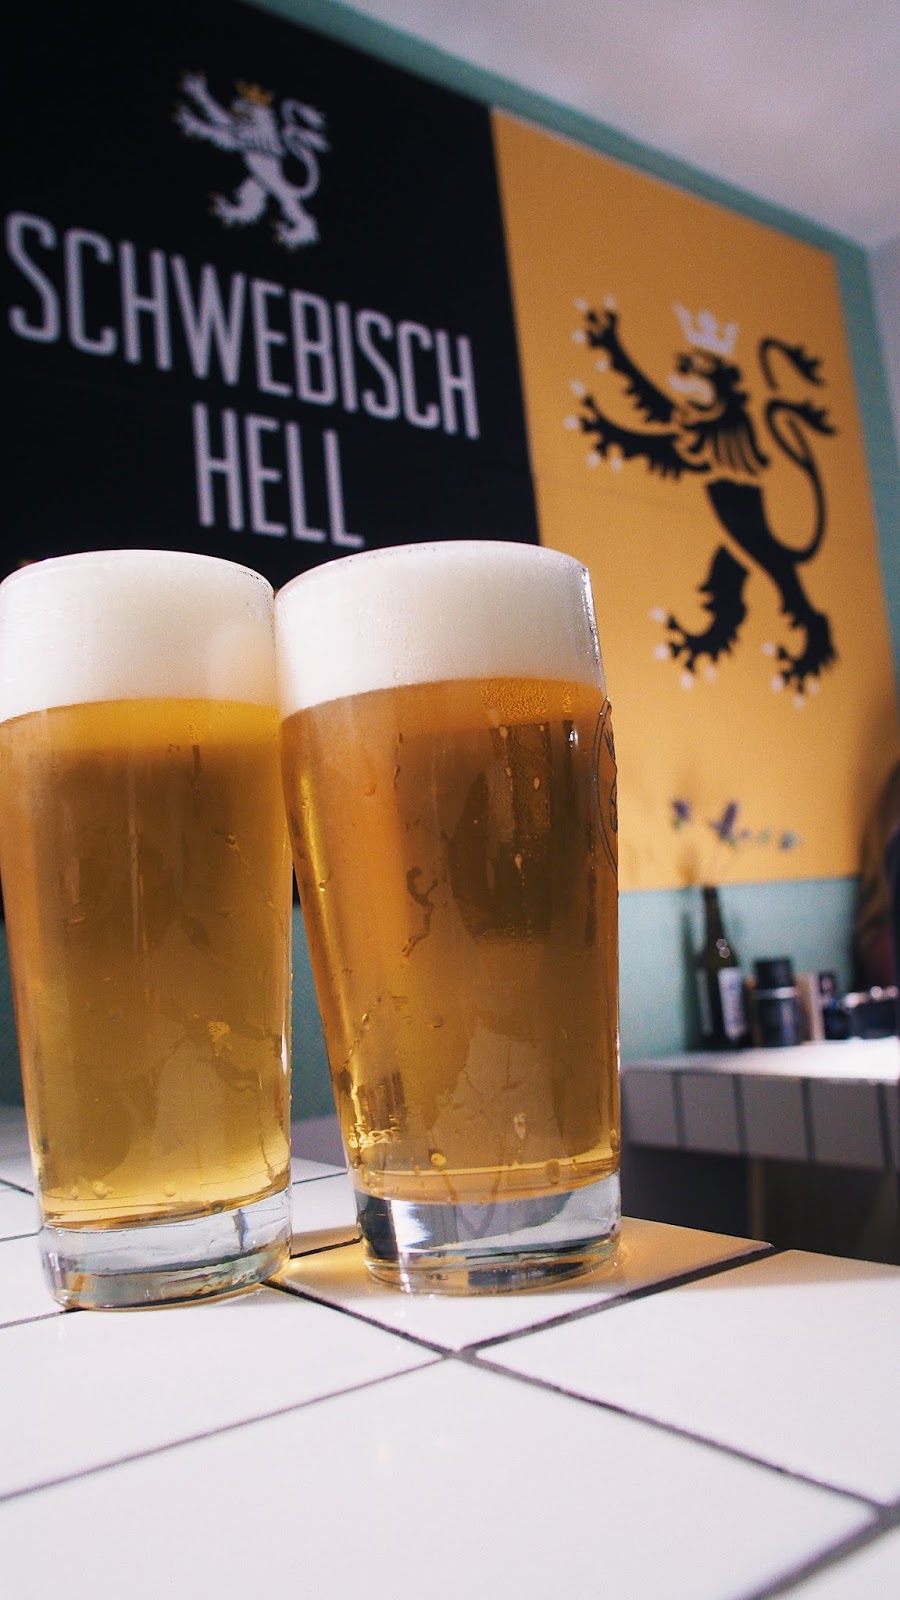 So war der Relaunch des Schwebisch Hell im Craft Beer Kiosk in Wuppertal | Infos und Fotos vom Event 